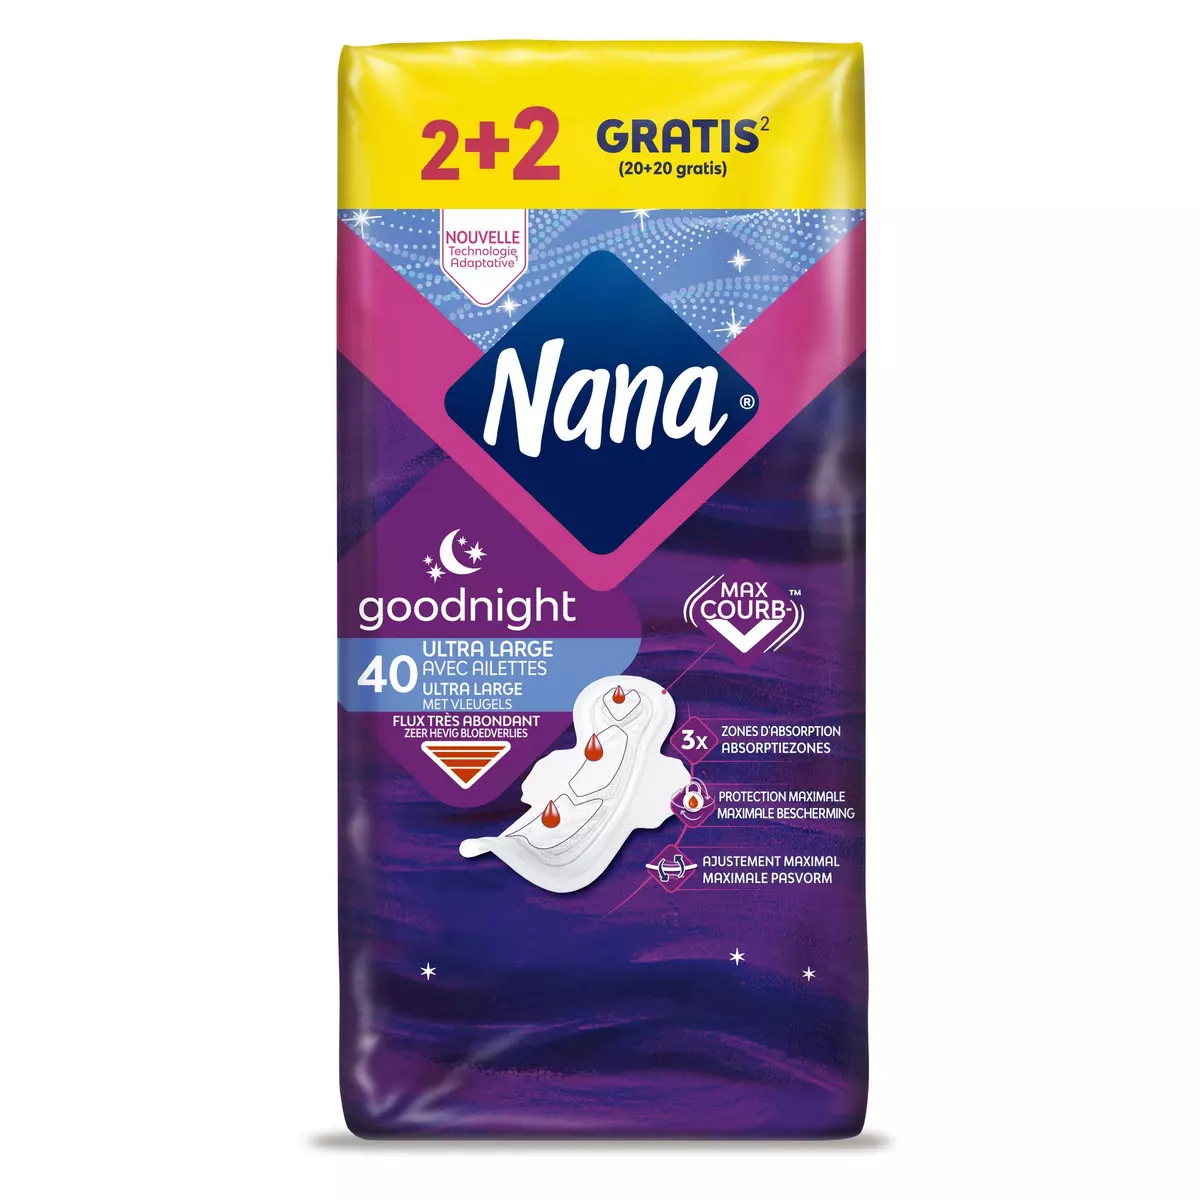 NANA Goodnight serviettes hygiéniques nuit avec ailettes 40 Serviettes